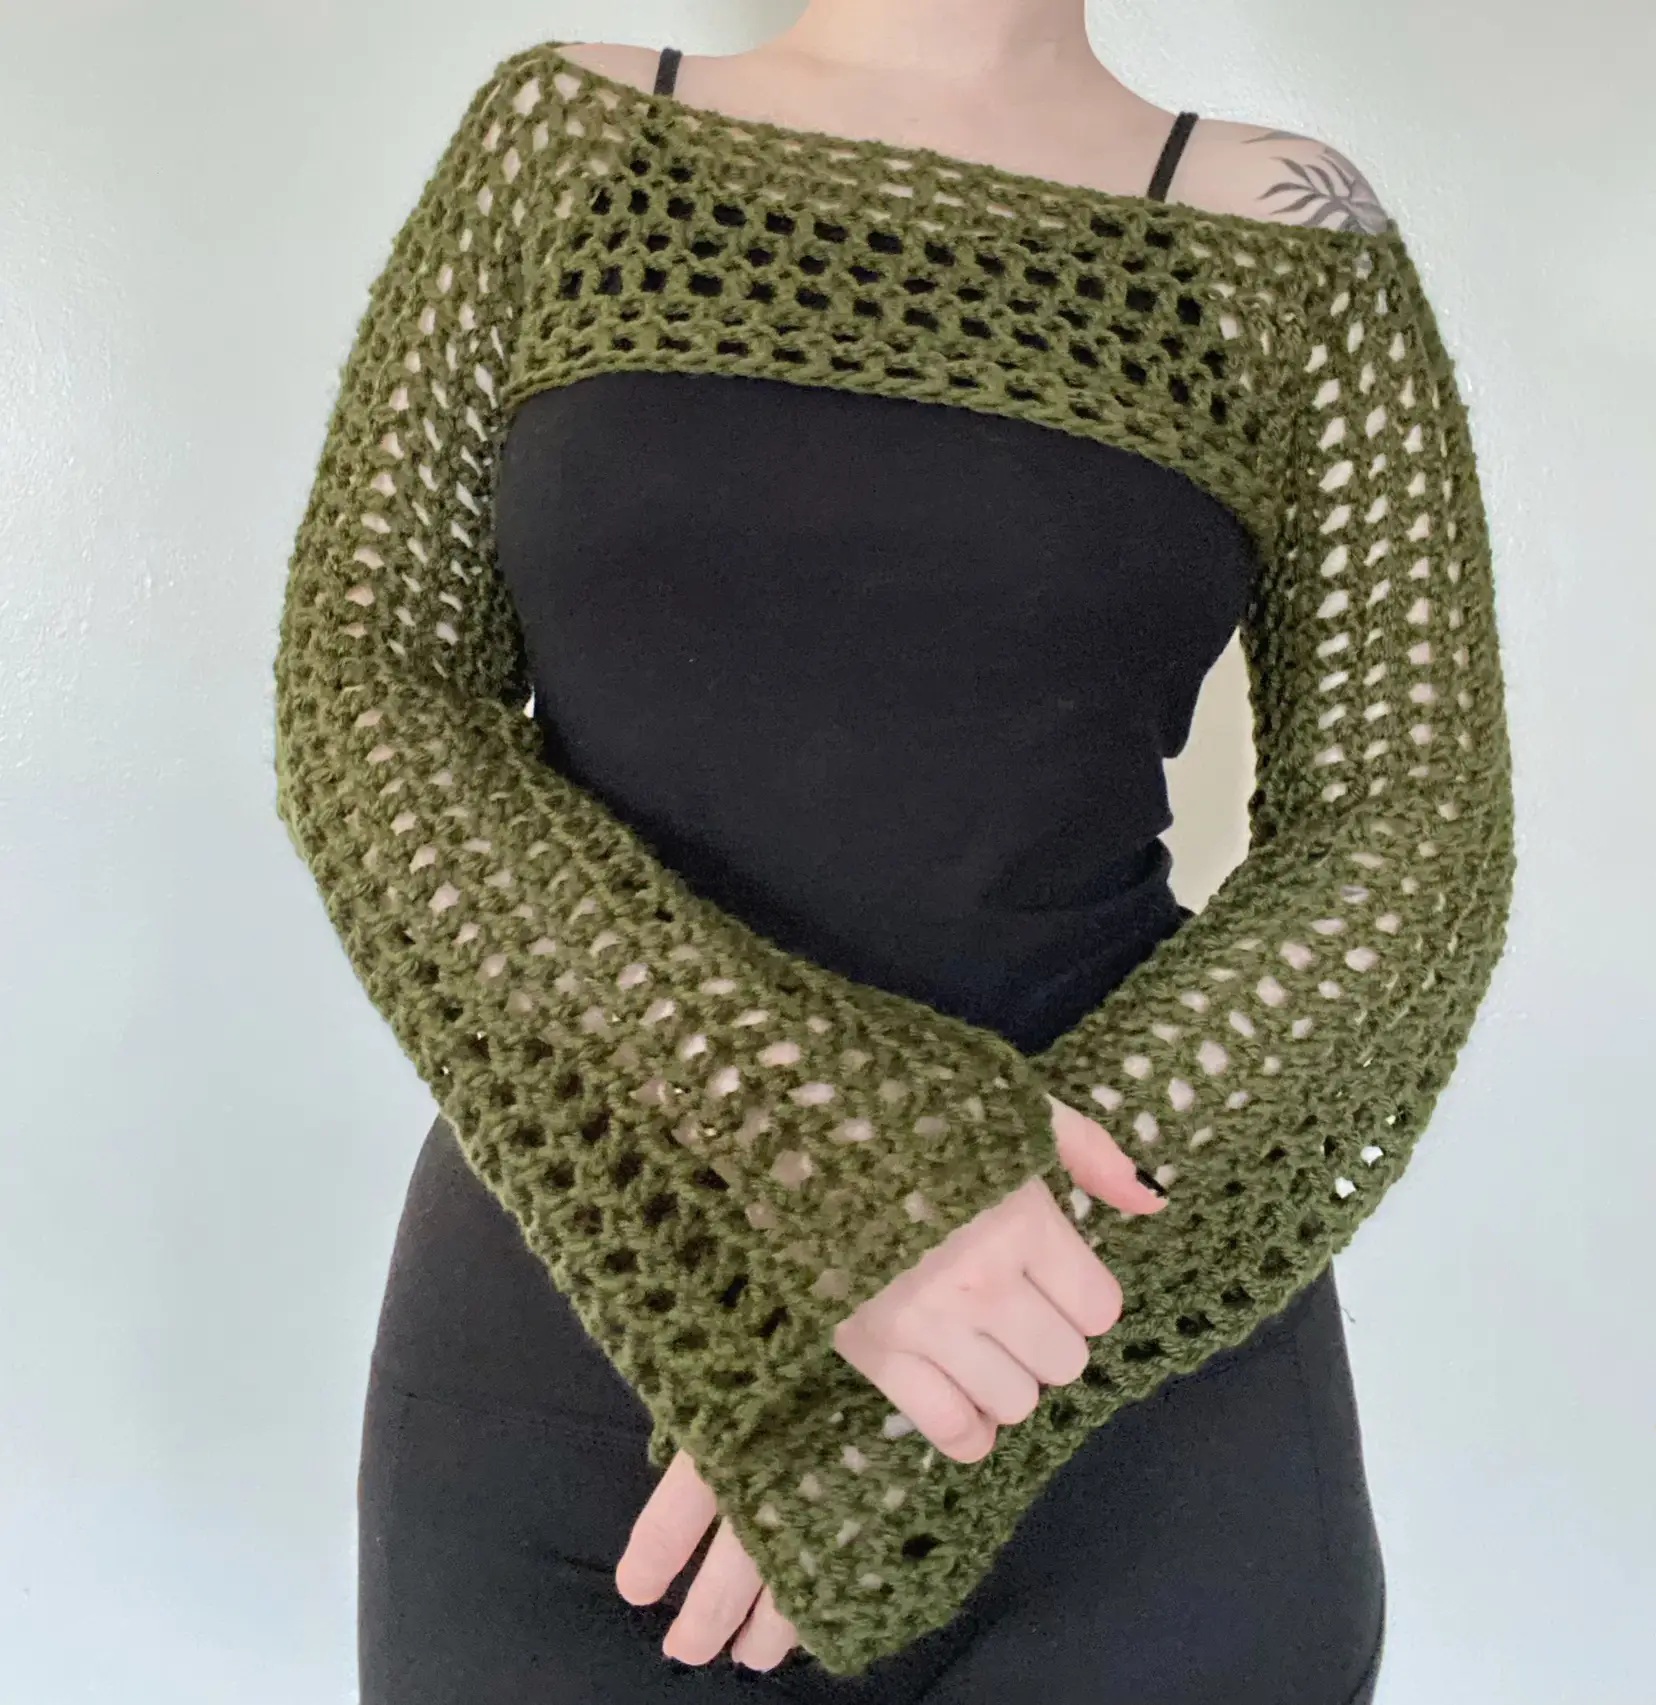 DIY Mesh Sleeves - HOW TO crochet mesh sleeves 